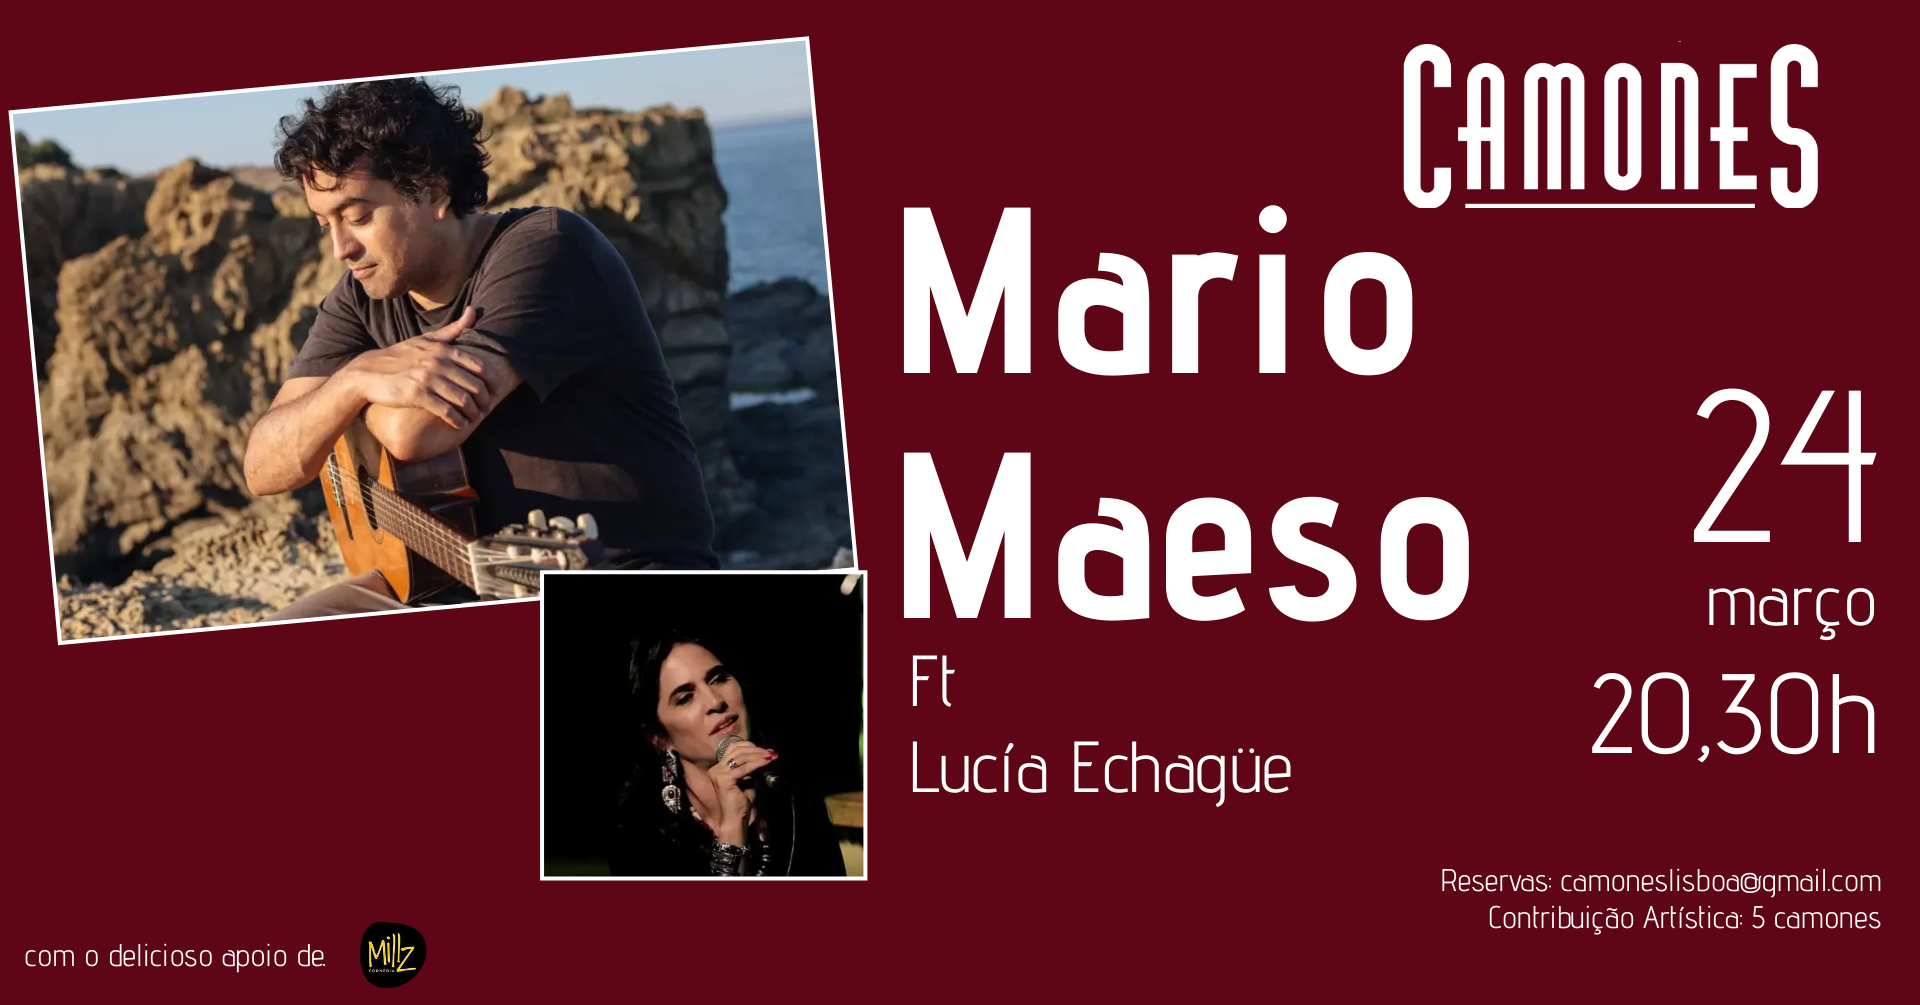 Mario Maeso ft Lucía Echagüe